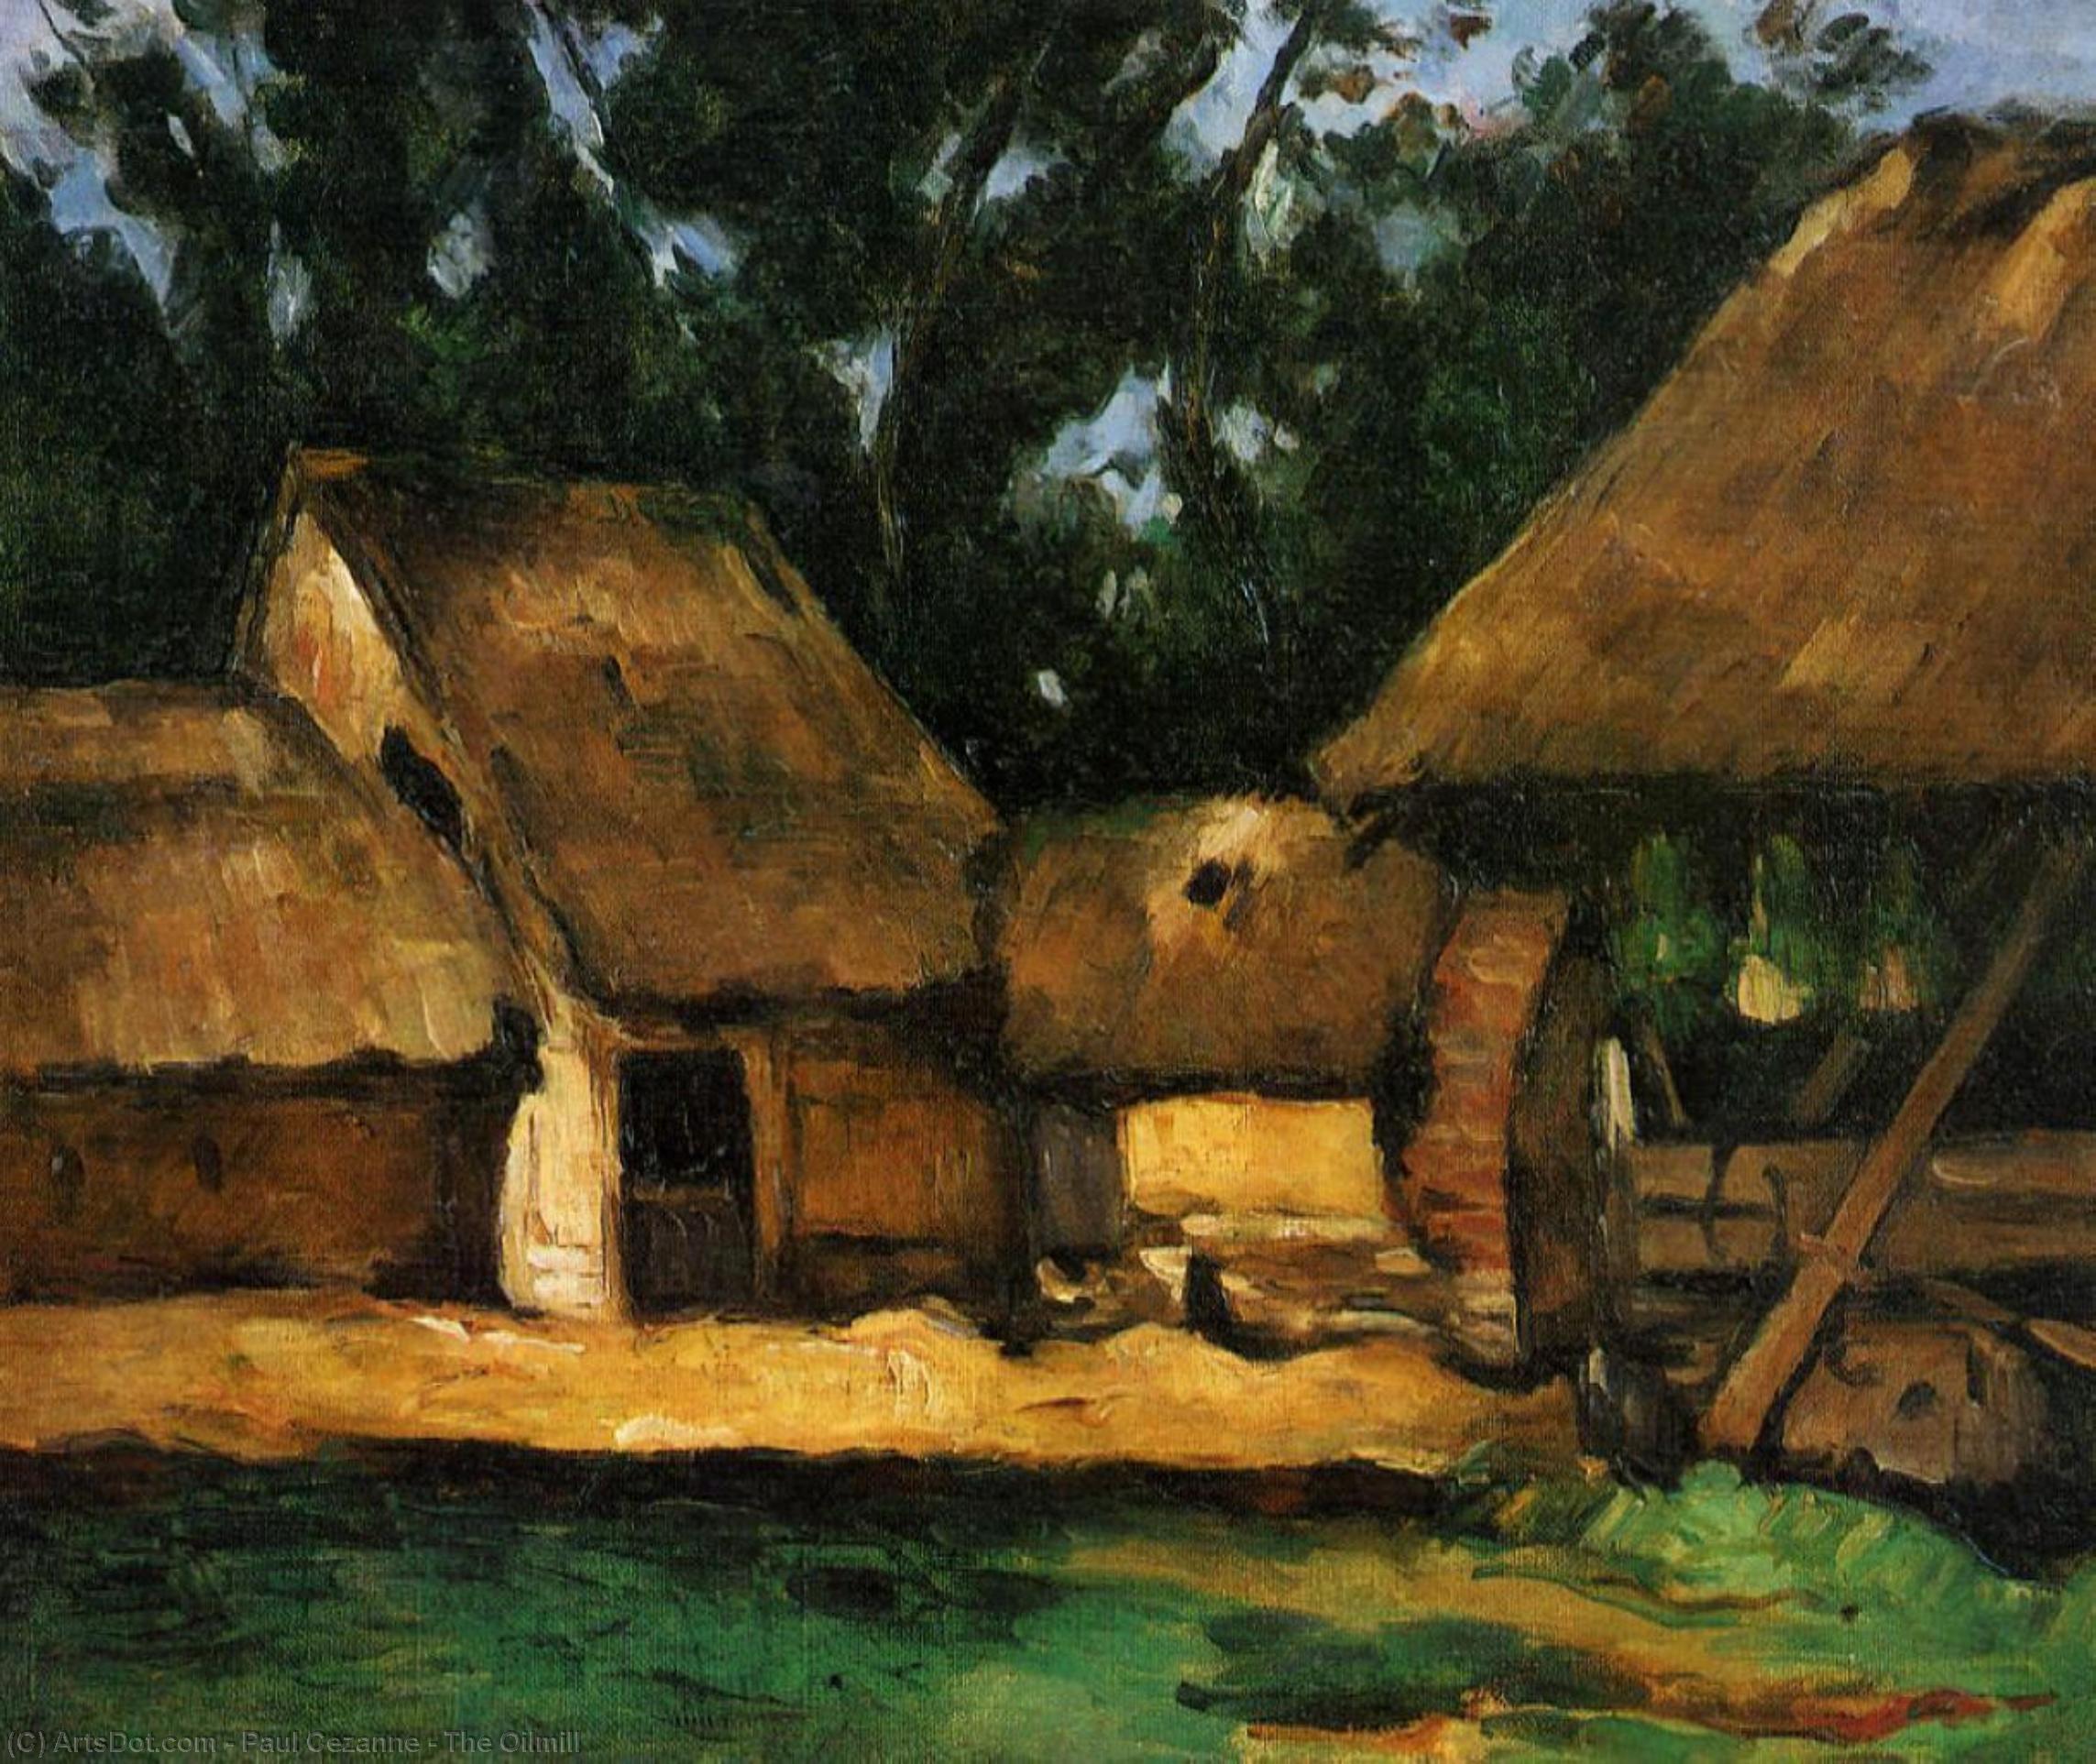 WikiOO.org - Encyclopedia of Fine Arts - Malba, Artwork Paul Cezanne - The Oilmill